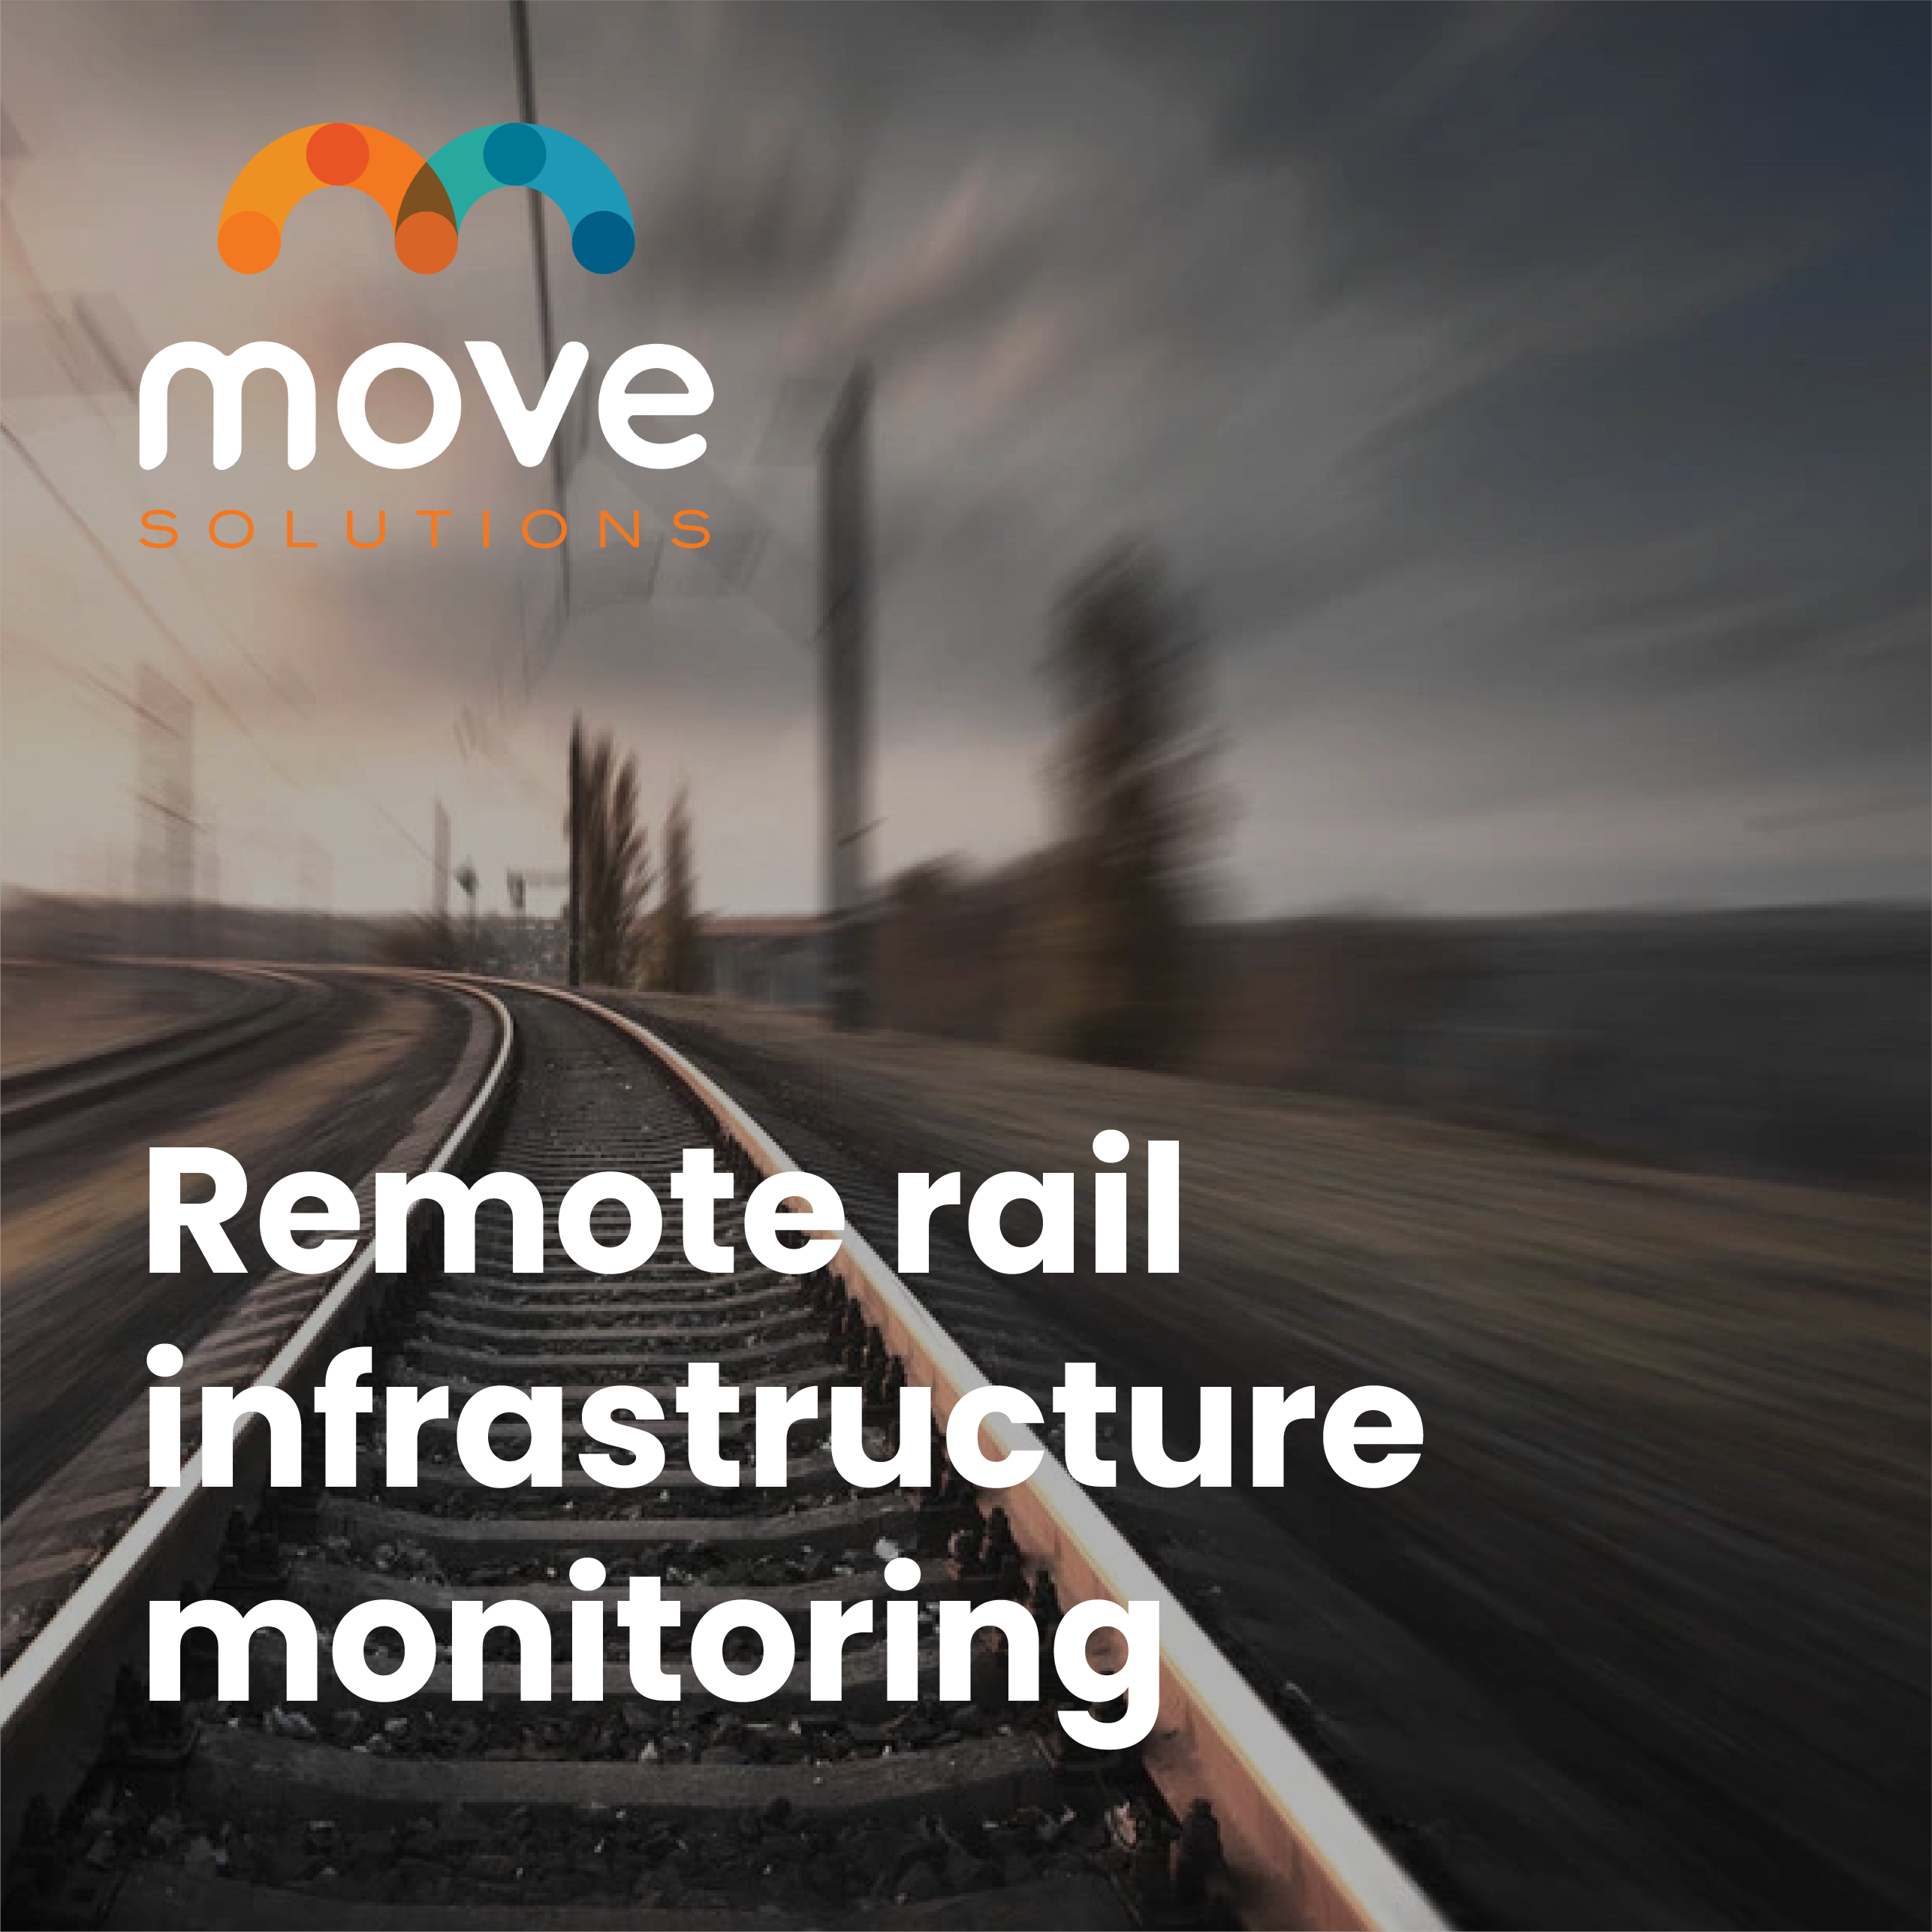 monitoraggio remoto dell'infrastruttura ferroviaria